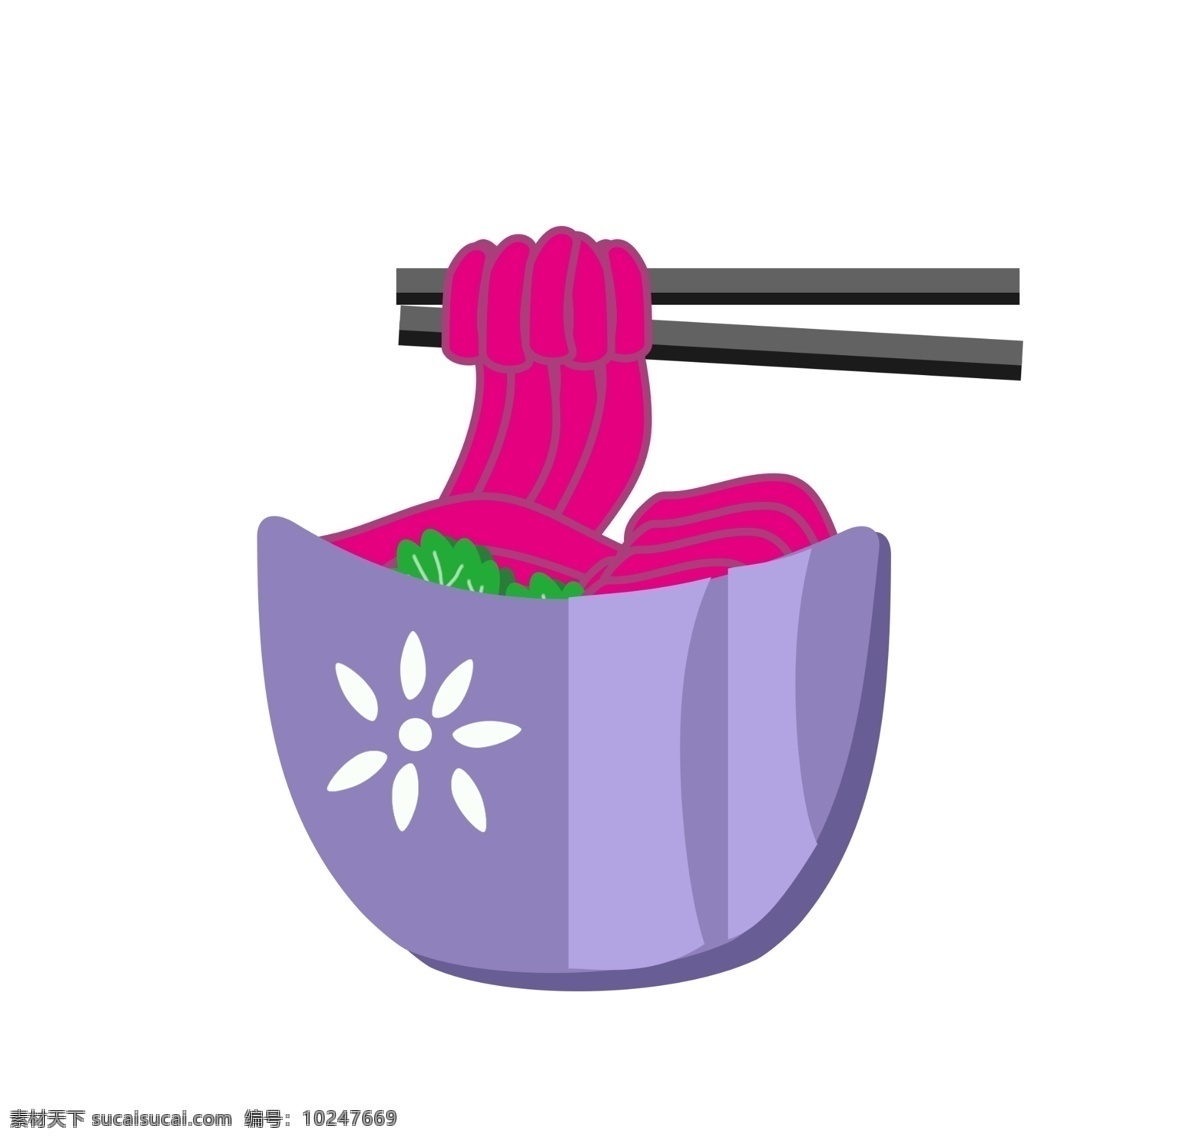 长长 面条 美食 插画 长长的面条 卡通插画 面条插画 美食插画 主食面条 面食面条 紫色的饭碗